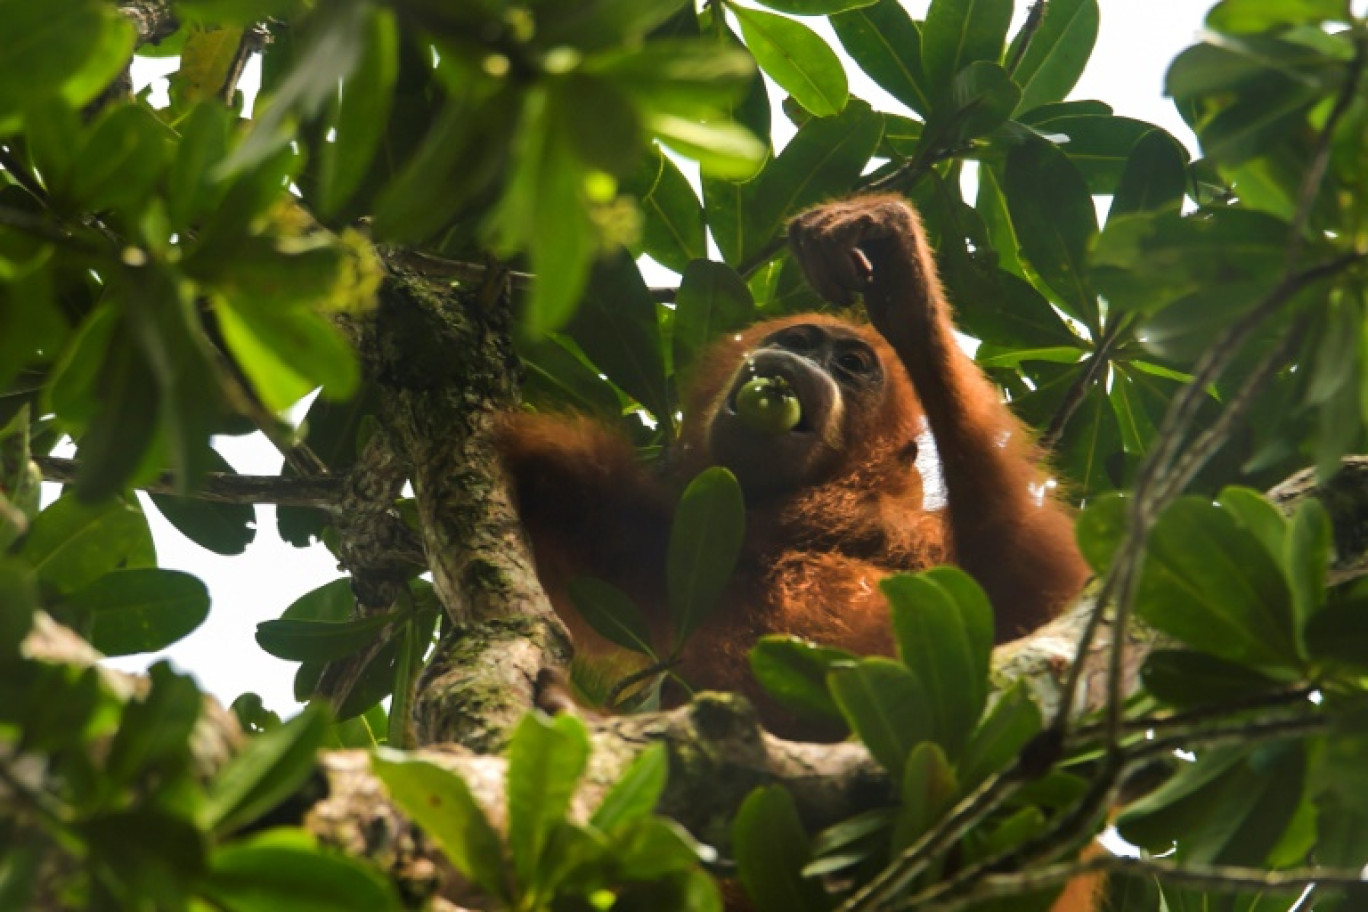 La Malaisie a l'intention d'offrir des orangs-outans aux pays acheteurs d'huile de palme, lançant ainsi une initiative rappelant "la diplomatie du panda" de la Chine © CHAIDEER MAHYUDDIN